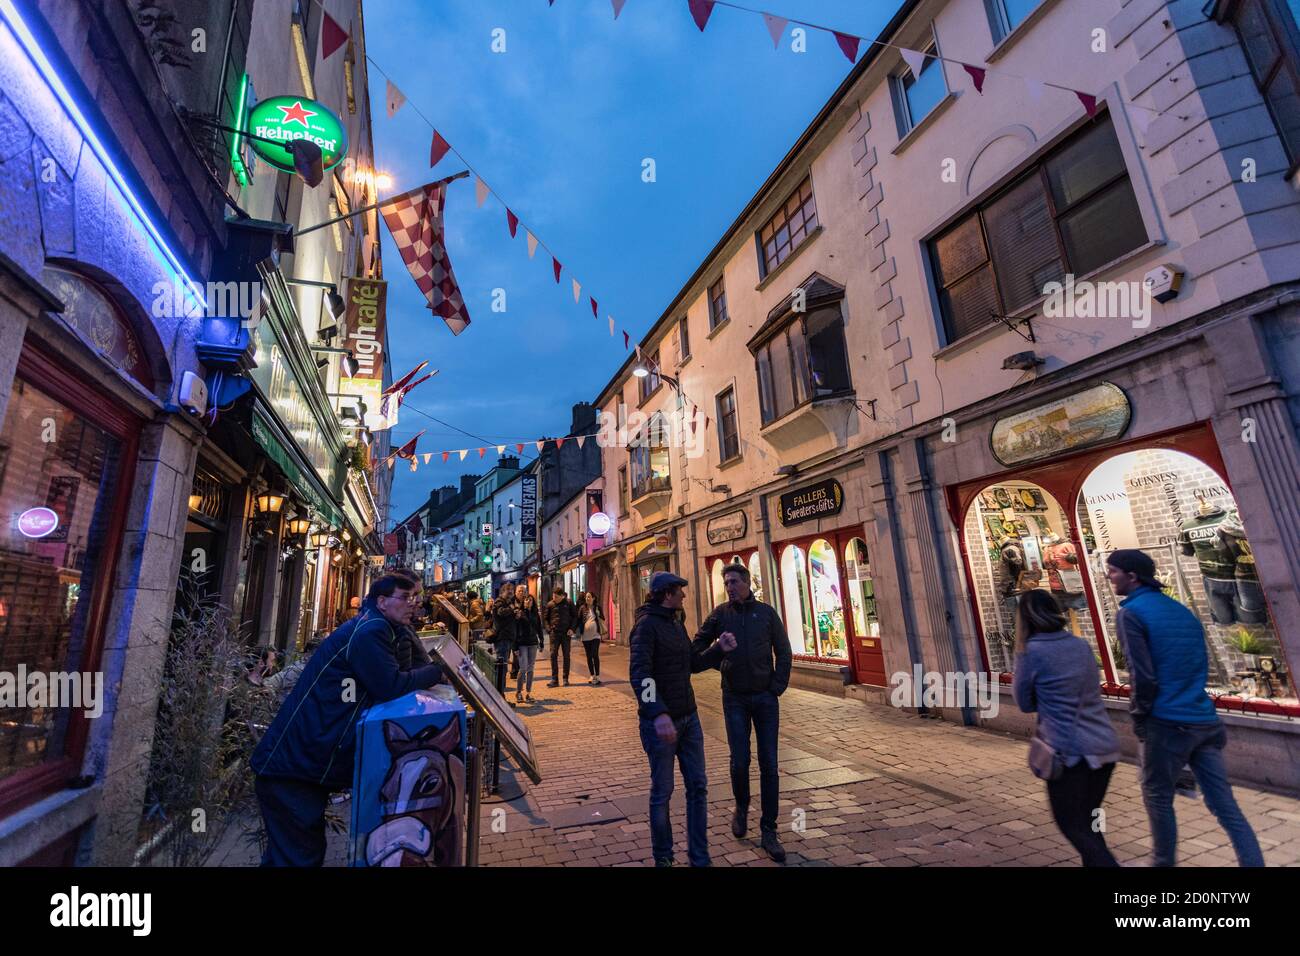 CITTÀ DI GALWAY, IRLANDA - 4 maggio 2018: Persone che camminano attraverso High Street nella popolare zona del quartiere Latino della città di Galway di notte. Foto Stock